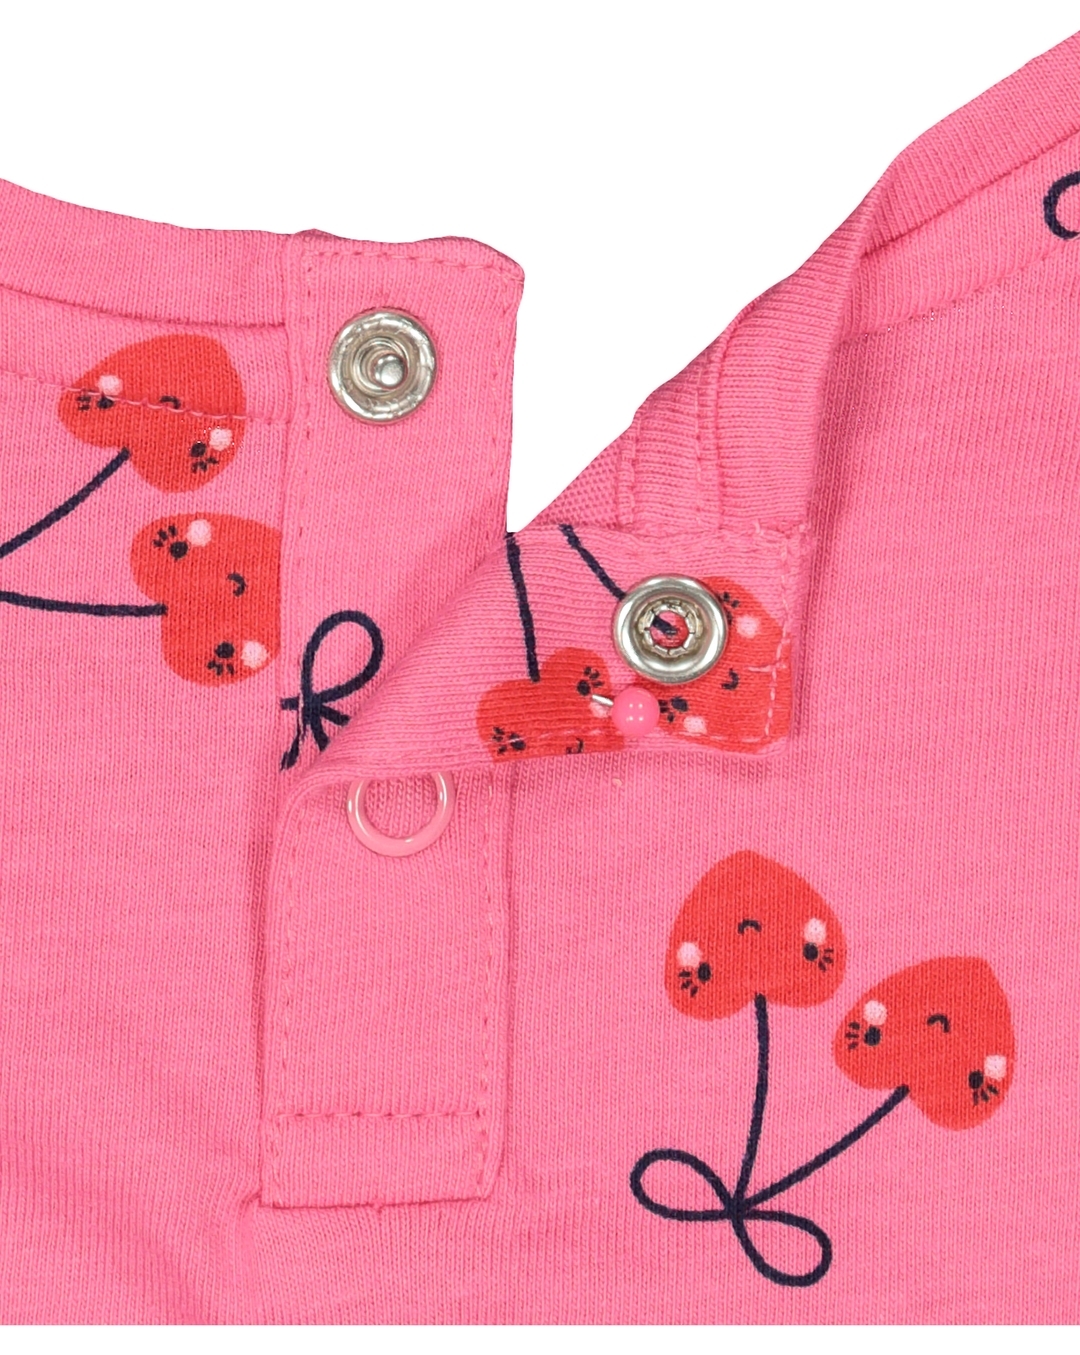 Girls Three- Piece Gradient Heart Graphic Set in Pink/Peach (7-12)